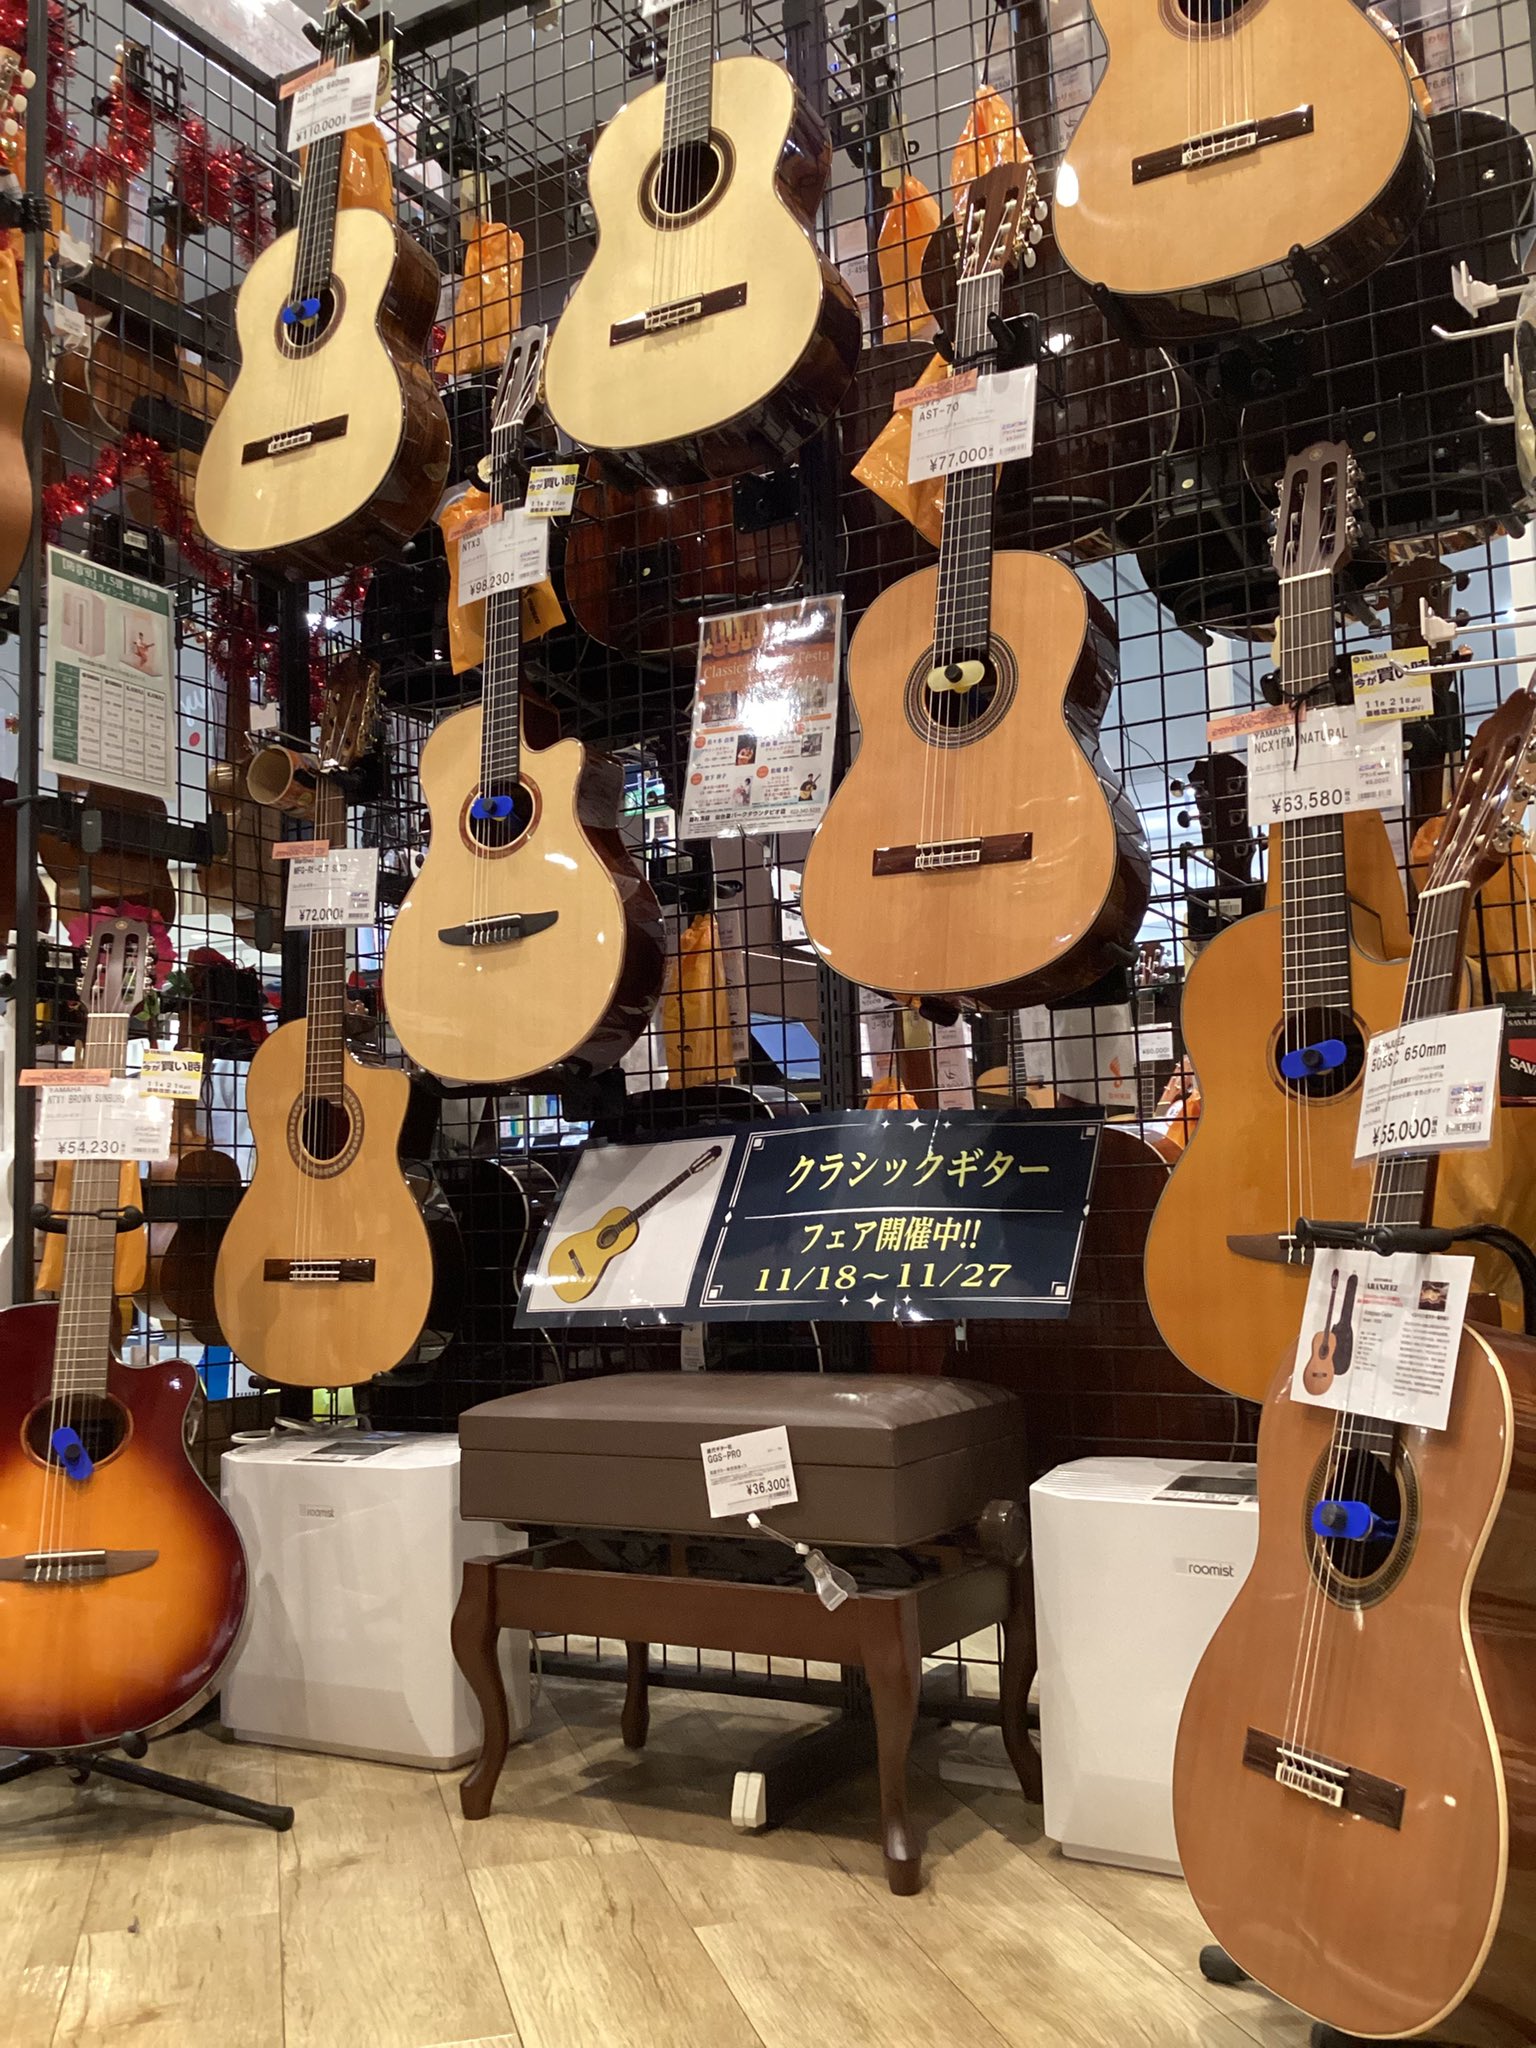 CONTENTSイオンモール天童店ではクラシックギターフェアを開催中！！イオンモール天童店ではクラシックギターフェアを開催中！！ 店頭にてクラシックギターを大量展示しております！ 気になる商品ございましたら是非店頭までお越しください！